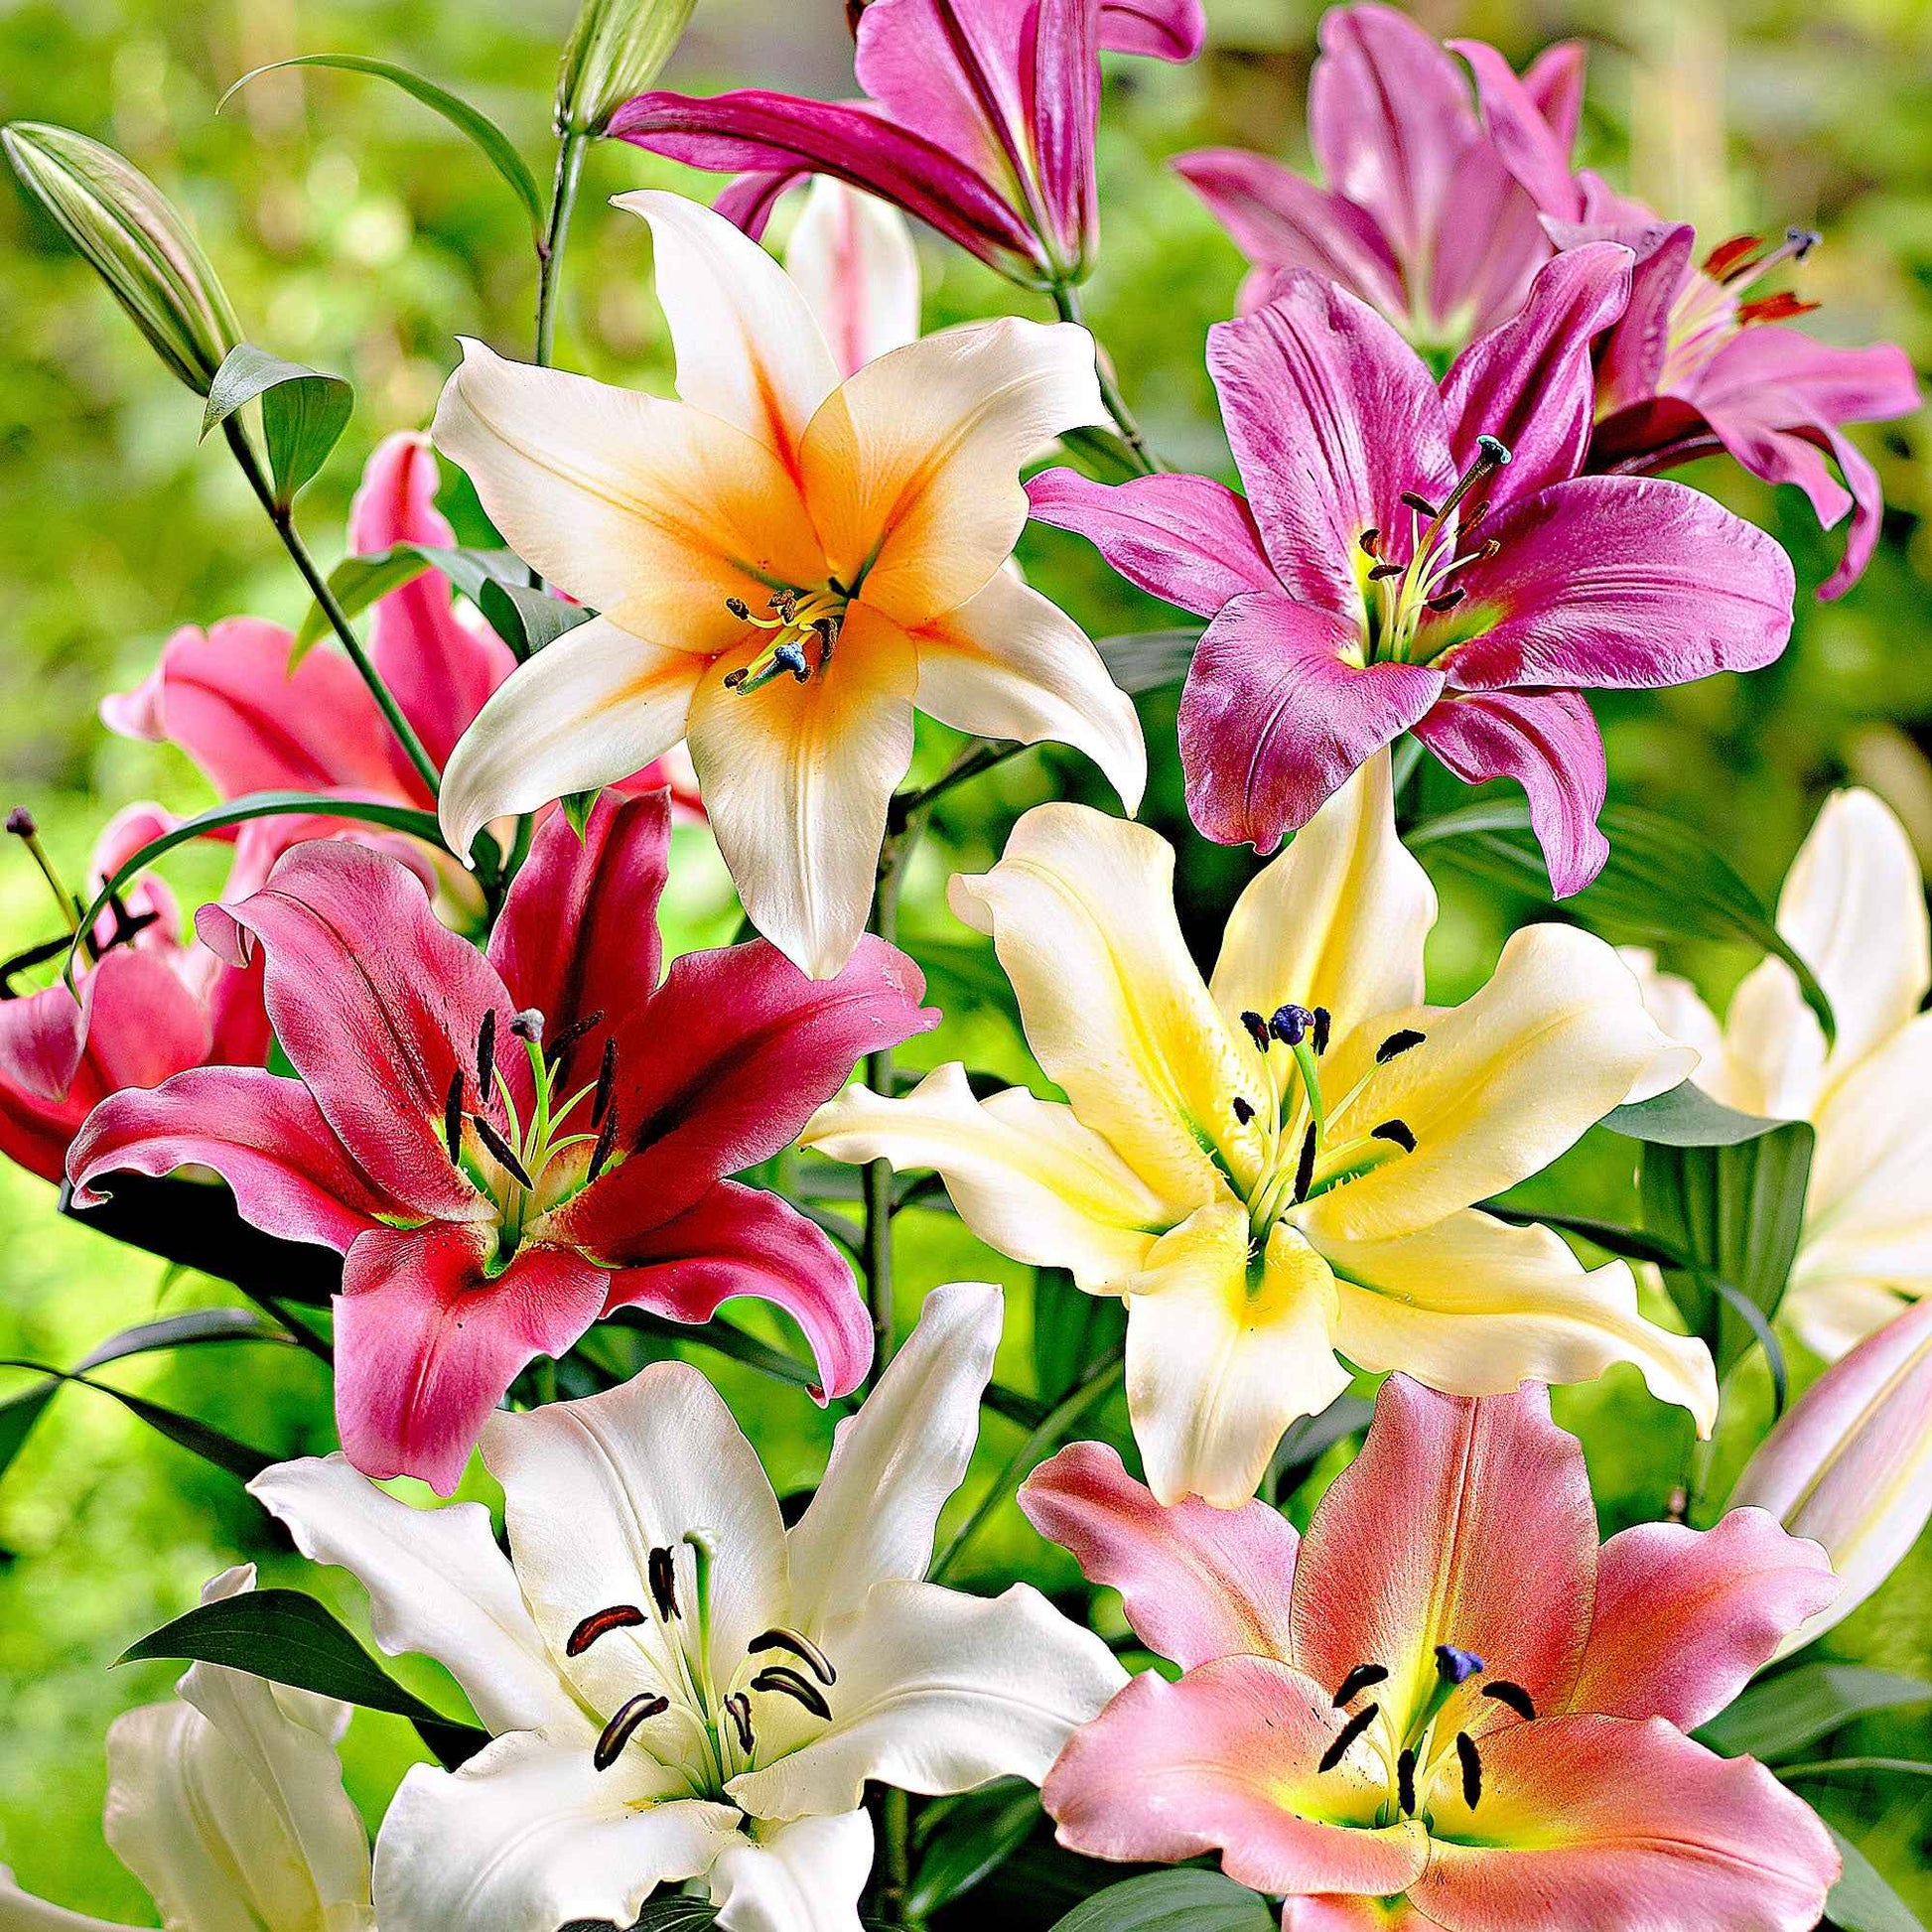 5x Lys Lilium - Mélange 'Sky High' - Tous les bulbes de fleurs populaires